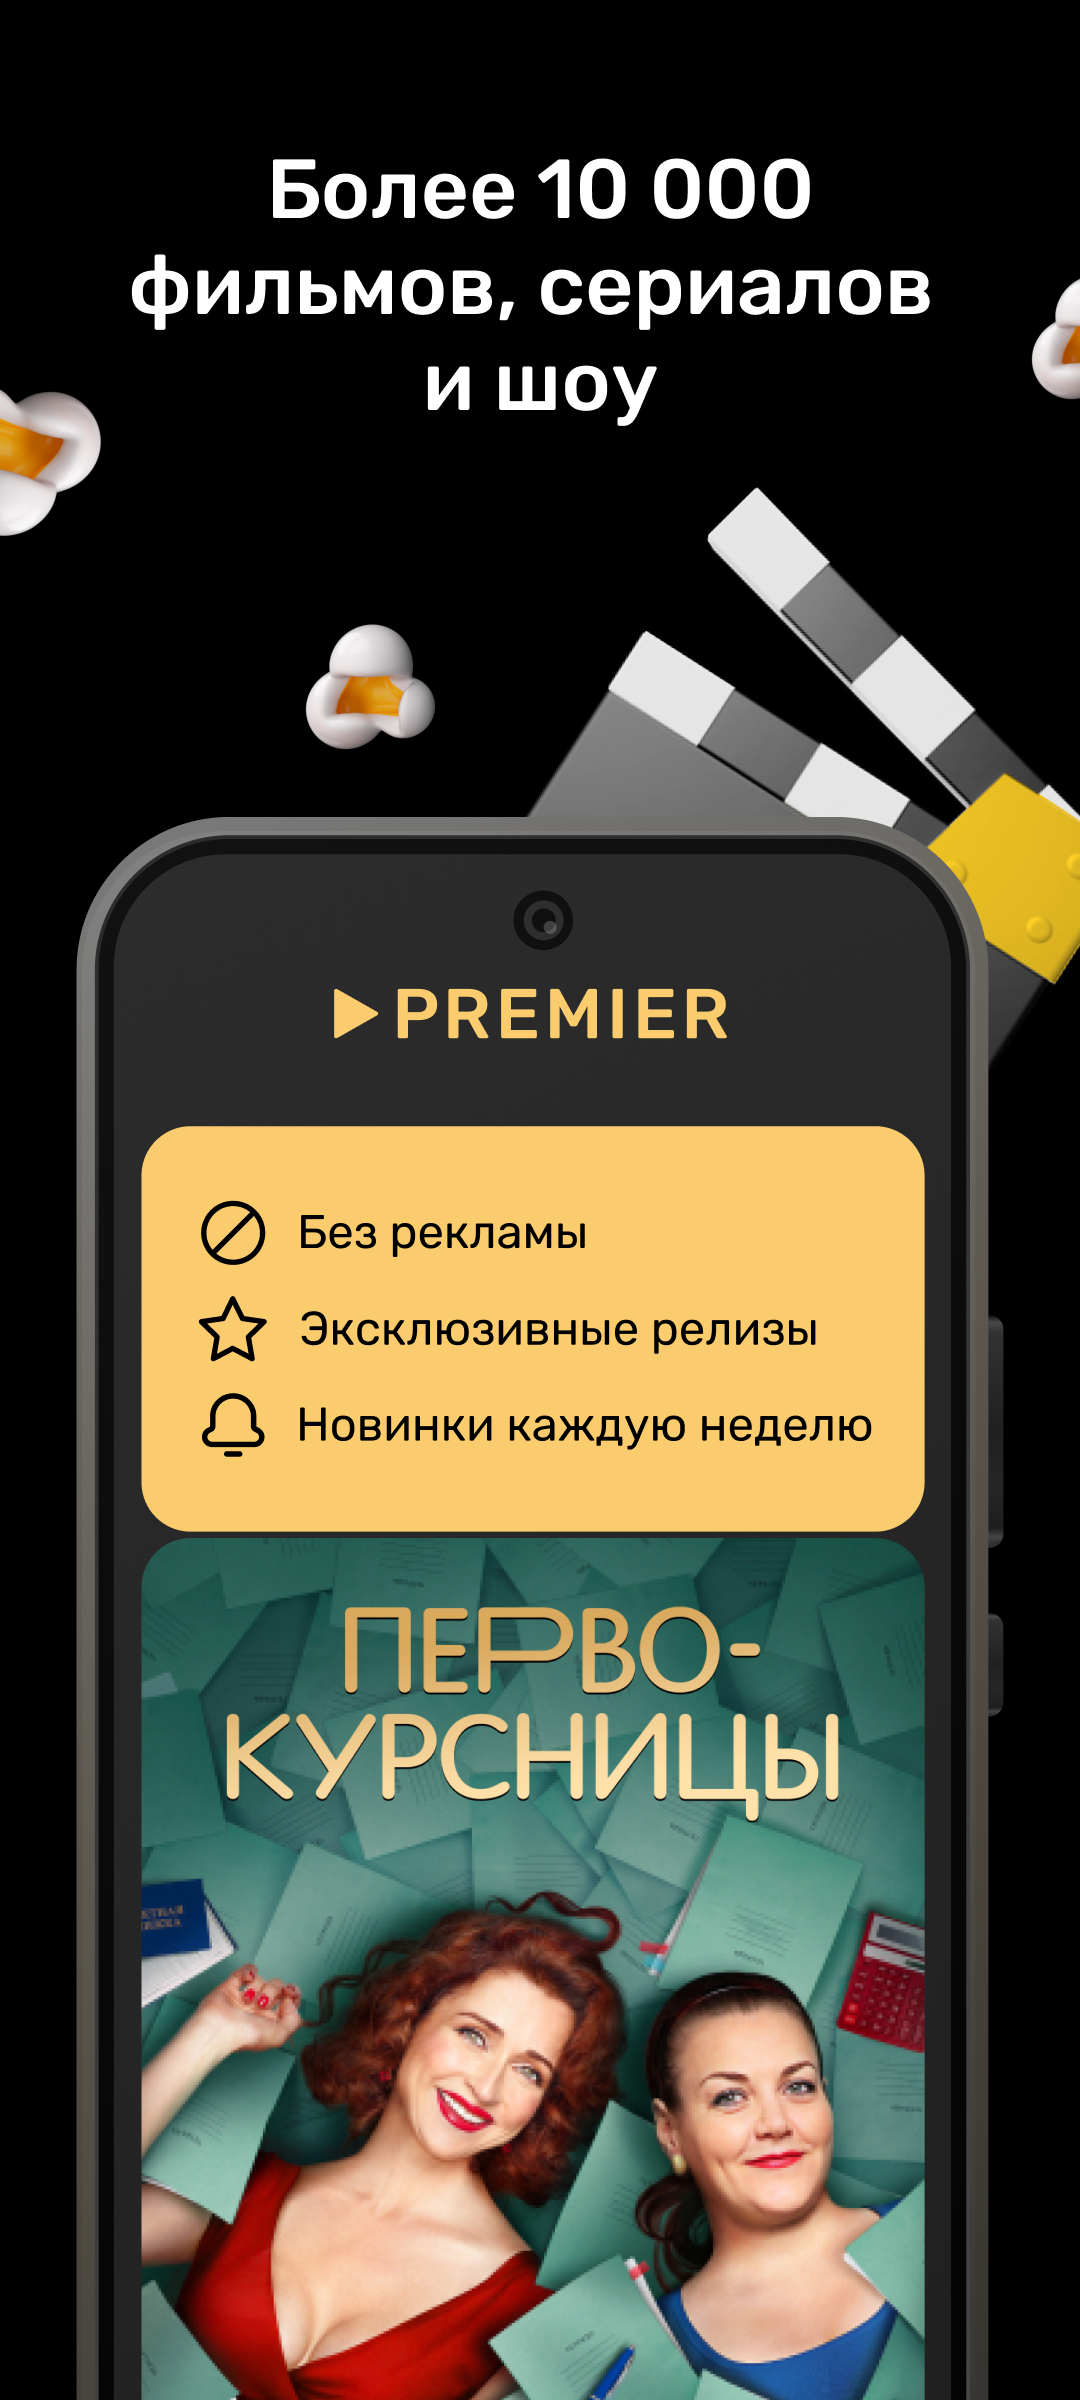 PREMIER - Сериалы, Фильмы, Шоу – Скачать Приложение Для Android.